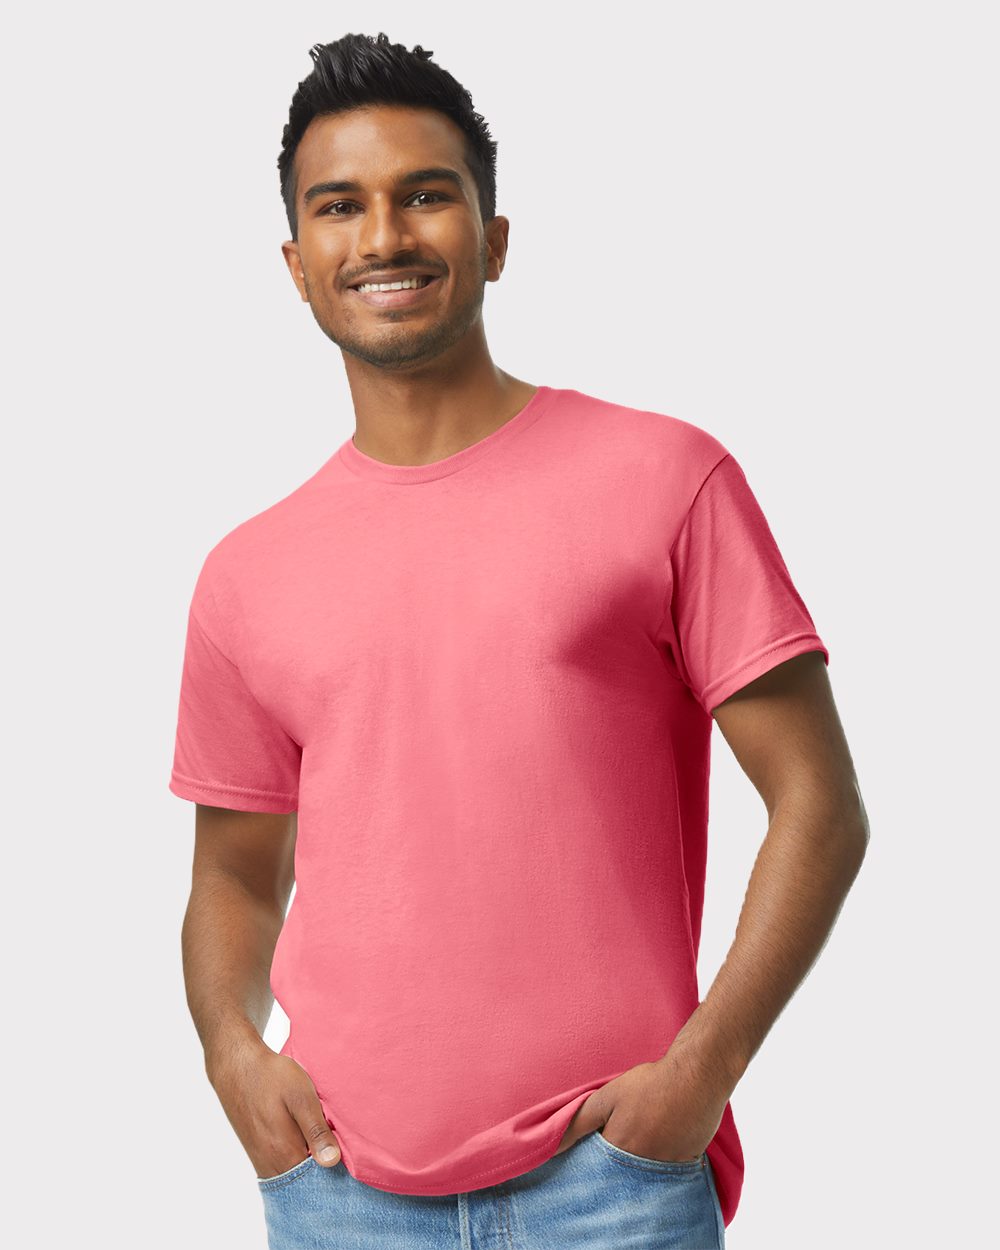 NIB - Men's T-Shirt Short Sleeve - El Salvador - image 3 of 3